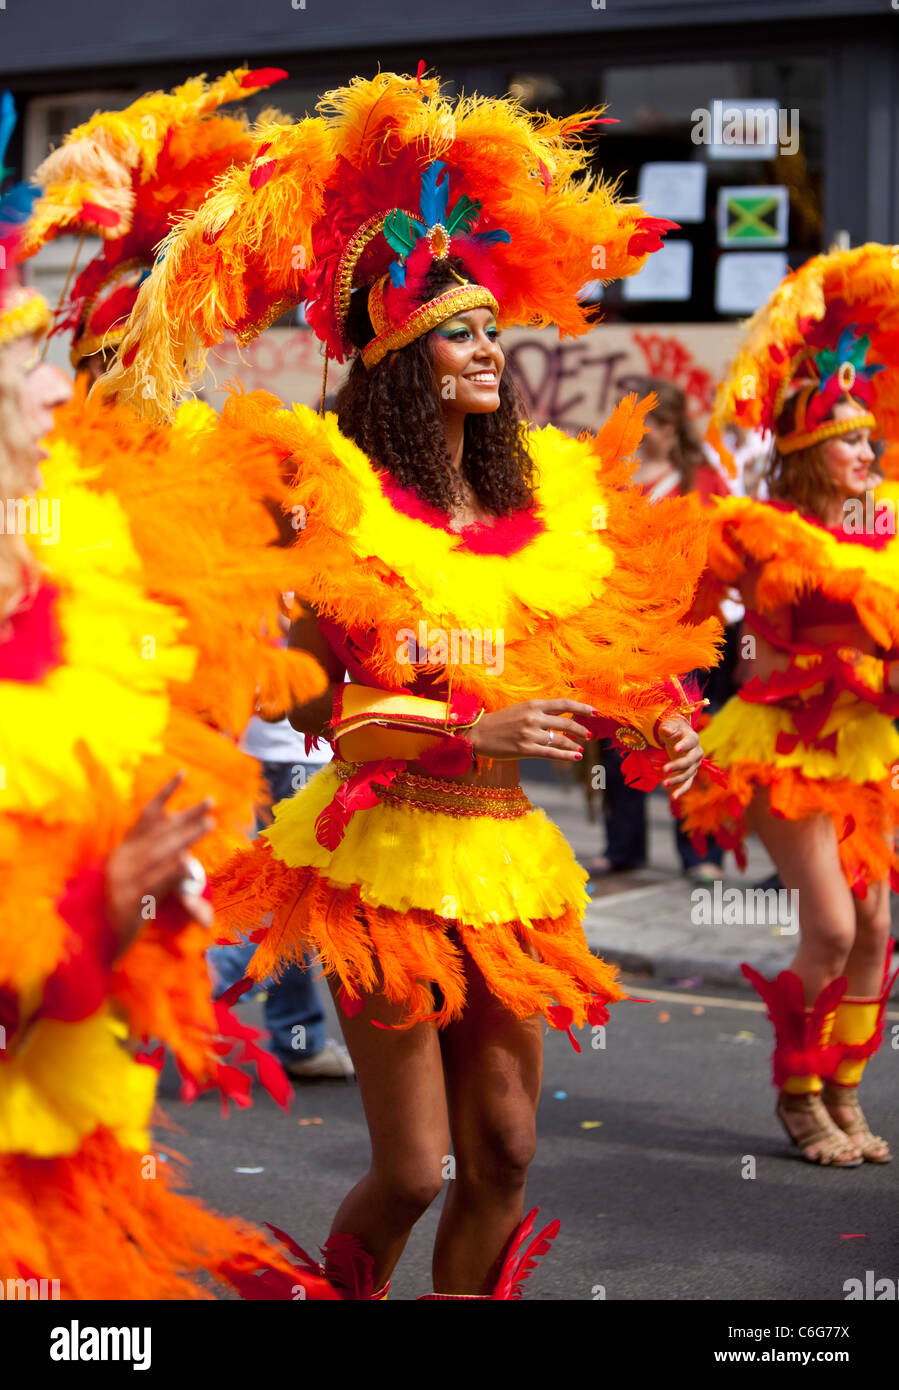 Danseuses de l'école de samba au Notting Hill Carnival, Londres, Angleterre, Royaume-Uni. Banque D'Images